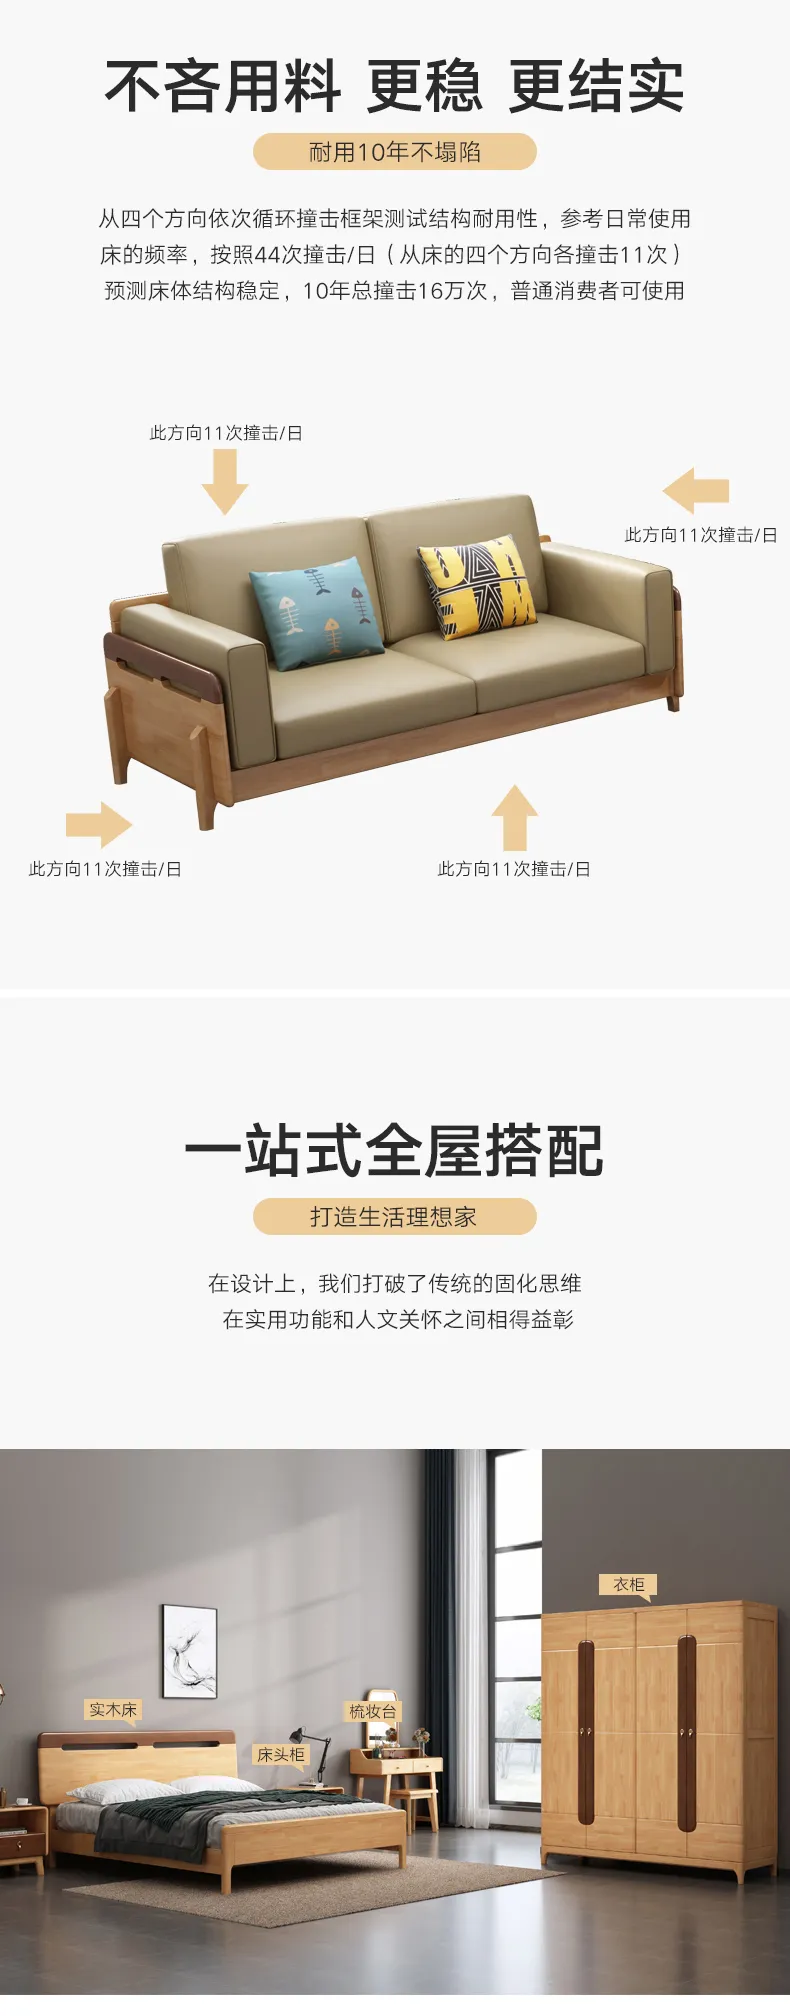 华松居 北欧全实木沙发现代简约客厅经济型 DM-629-K沙发(图4)